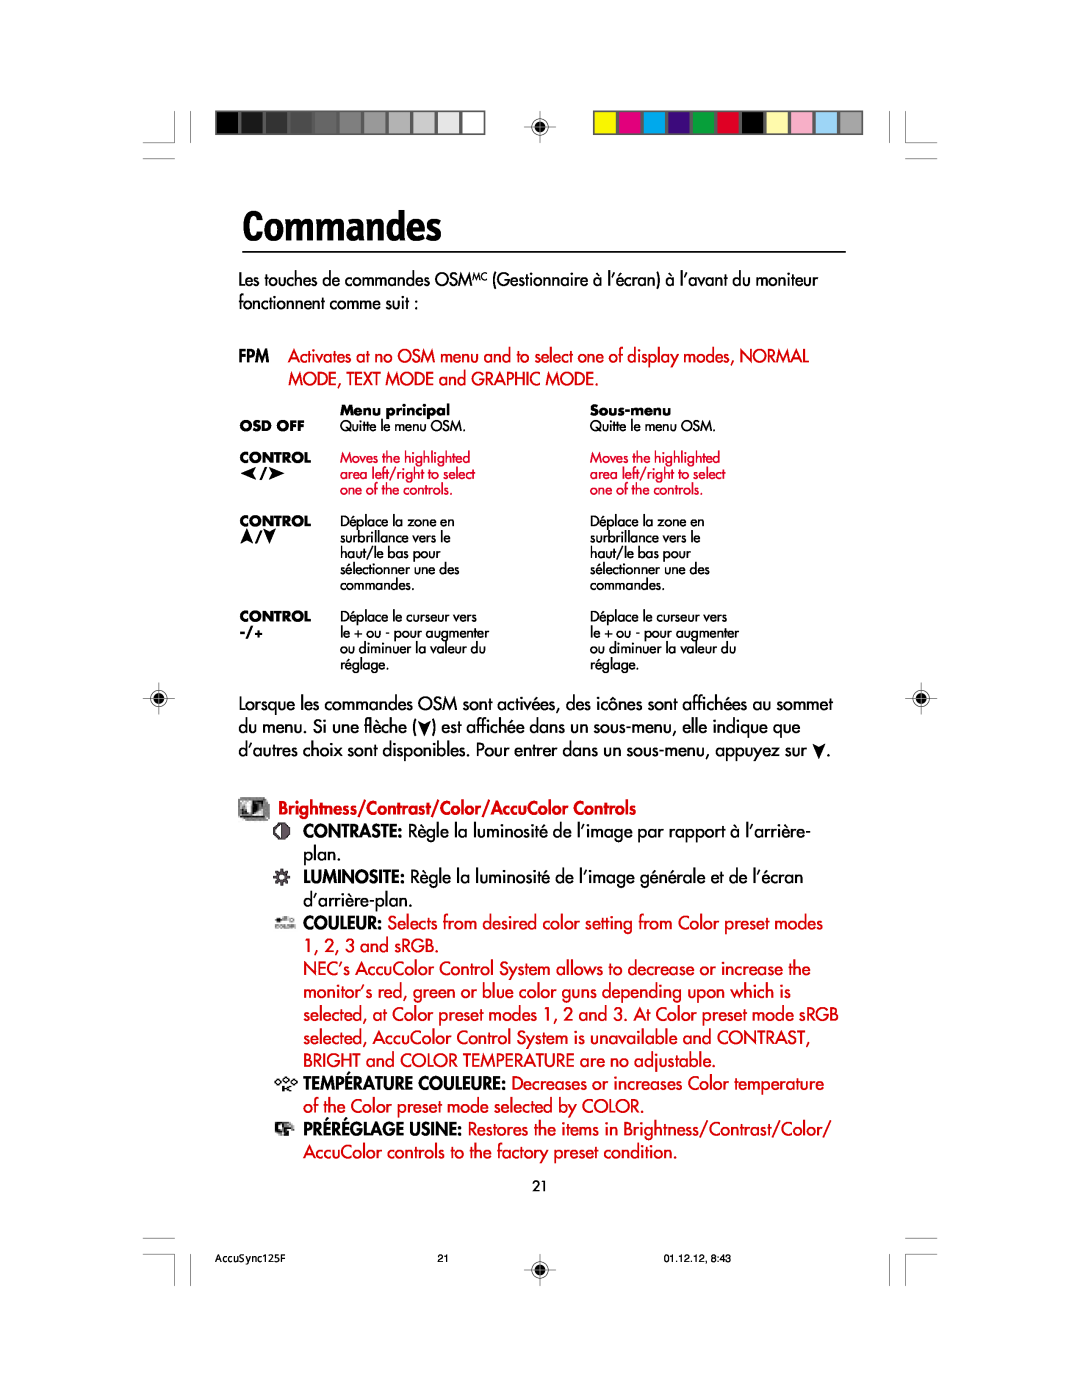 NEC 125F user manual Commandes 